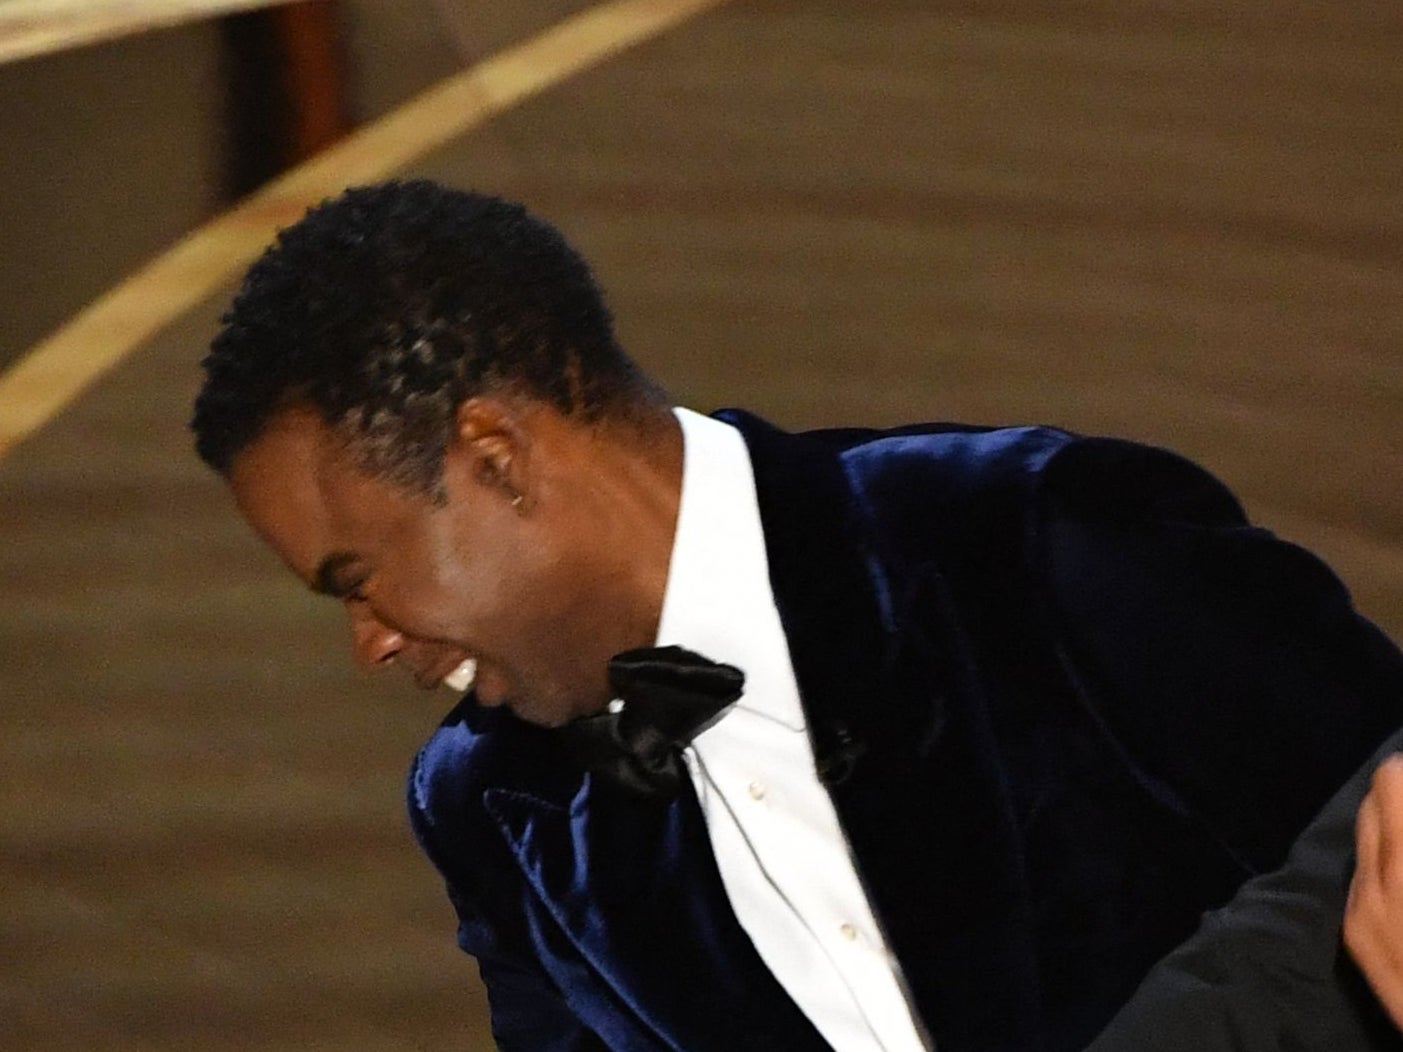 Las fotos capturadas en directo en la ceremonia de los Oscar, y disponibles en Getty, muestran que Rock no llevaba una almohadilla en la mejilla durante el incidente